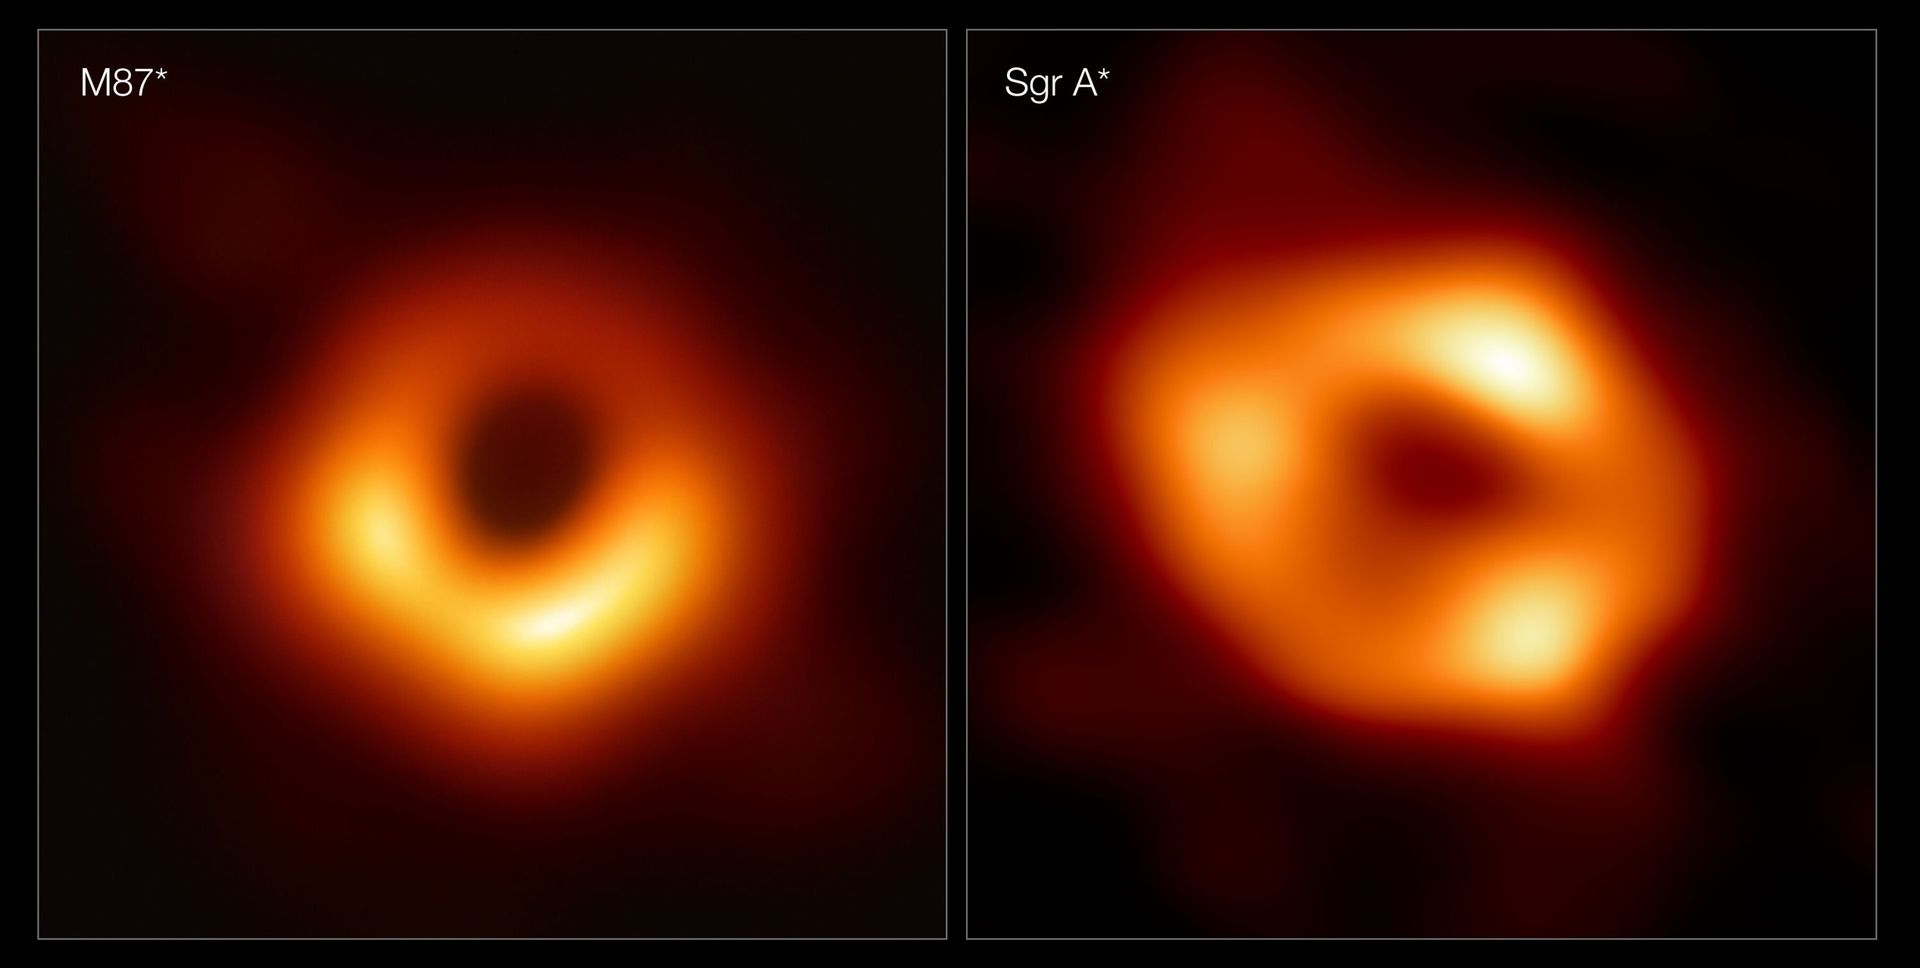 Comparaison entre les trous noirs Sgr A* et M87*